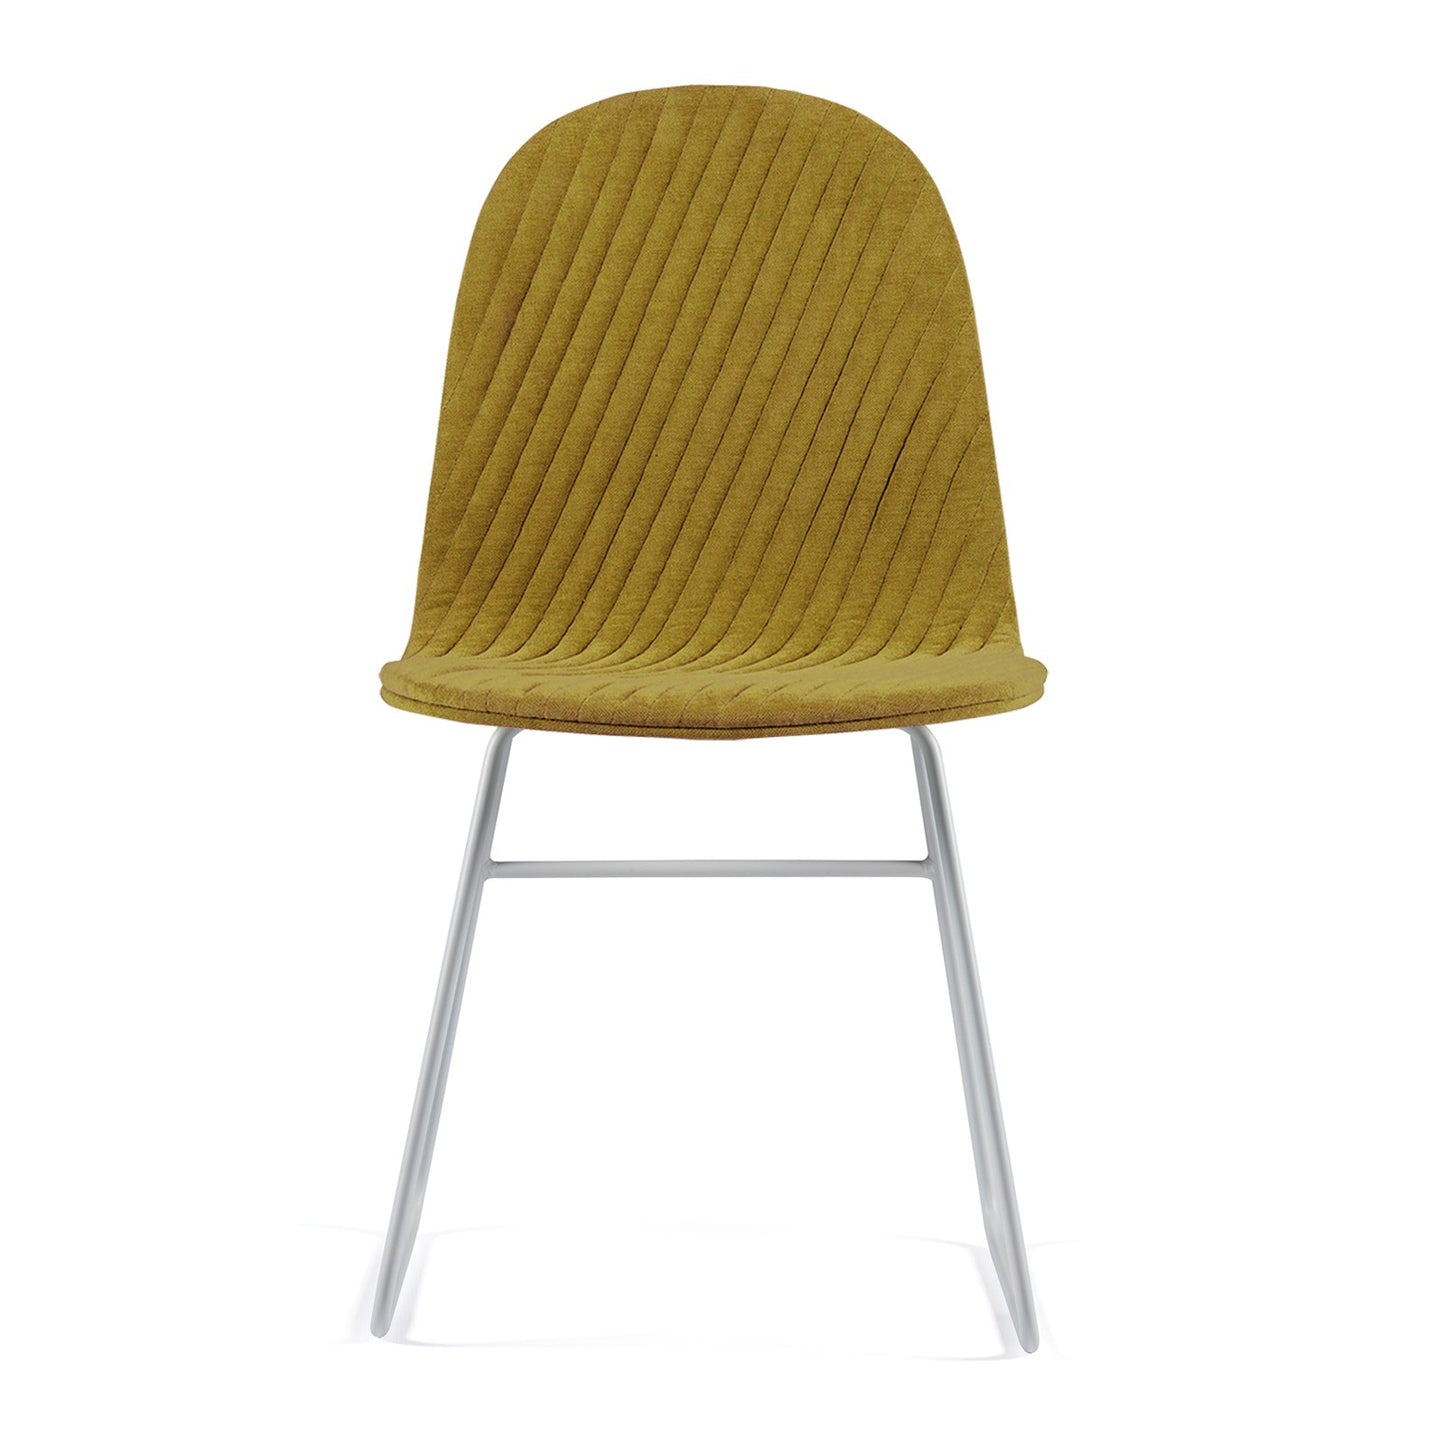 Chair Mannequin 02 - Mustard